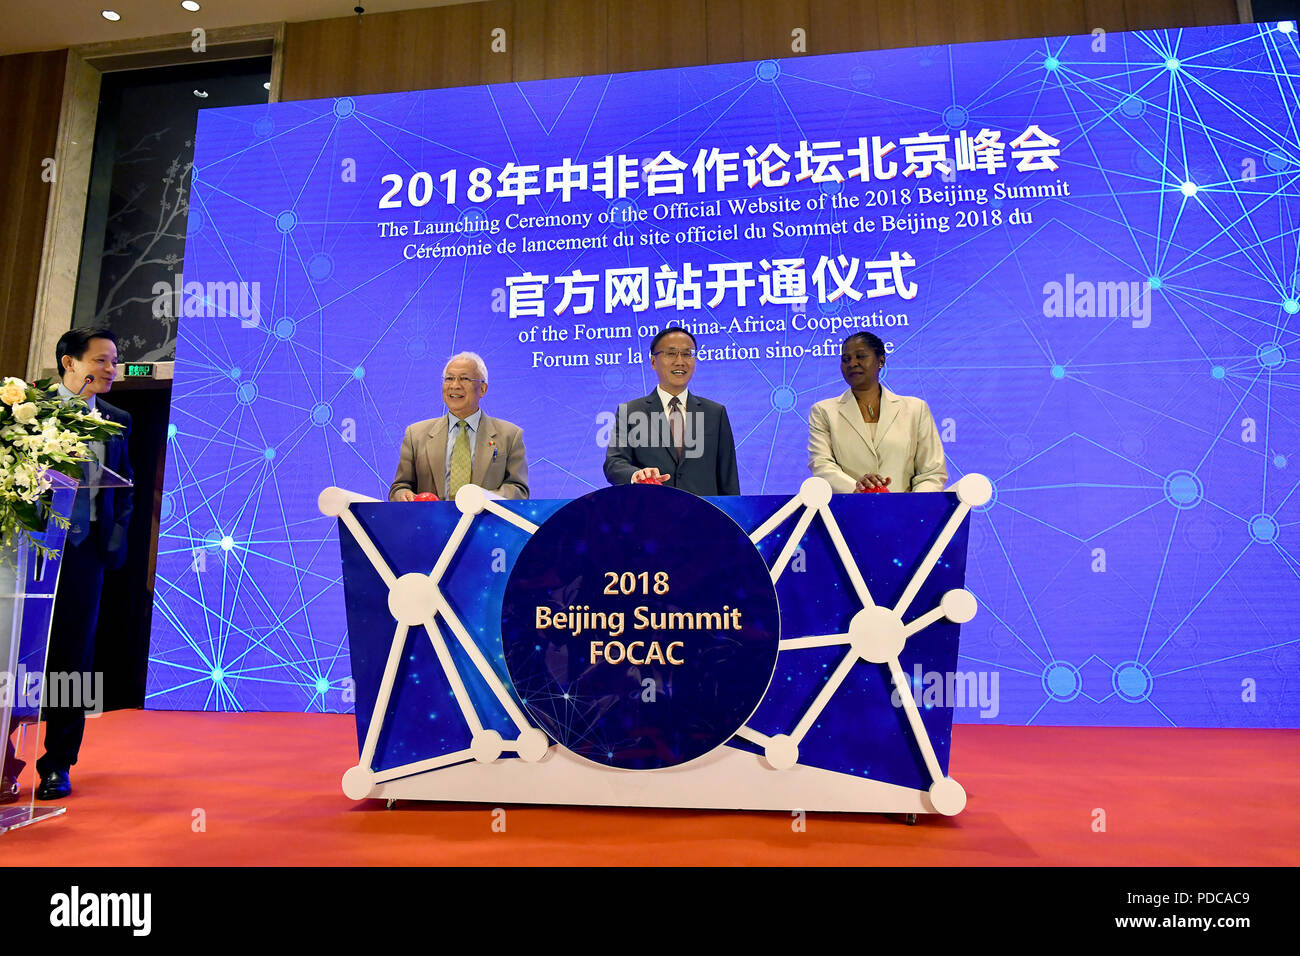 (180808) - Peking, August 8, 2018 (Xinhua) - Foto auf Aug 8, 2018 zeigt die einer Zeremonie eine offizielle Website (focacsummit.mfa.gov.cn) des Forum für chinesisch-afrikanische Zusammenarbeit (FOCAC) Peking Gipfel 2018 in Peking, der Hauptstadt von China. Stockfoto